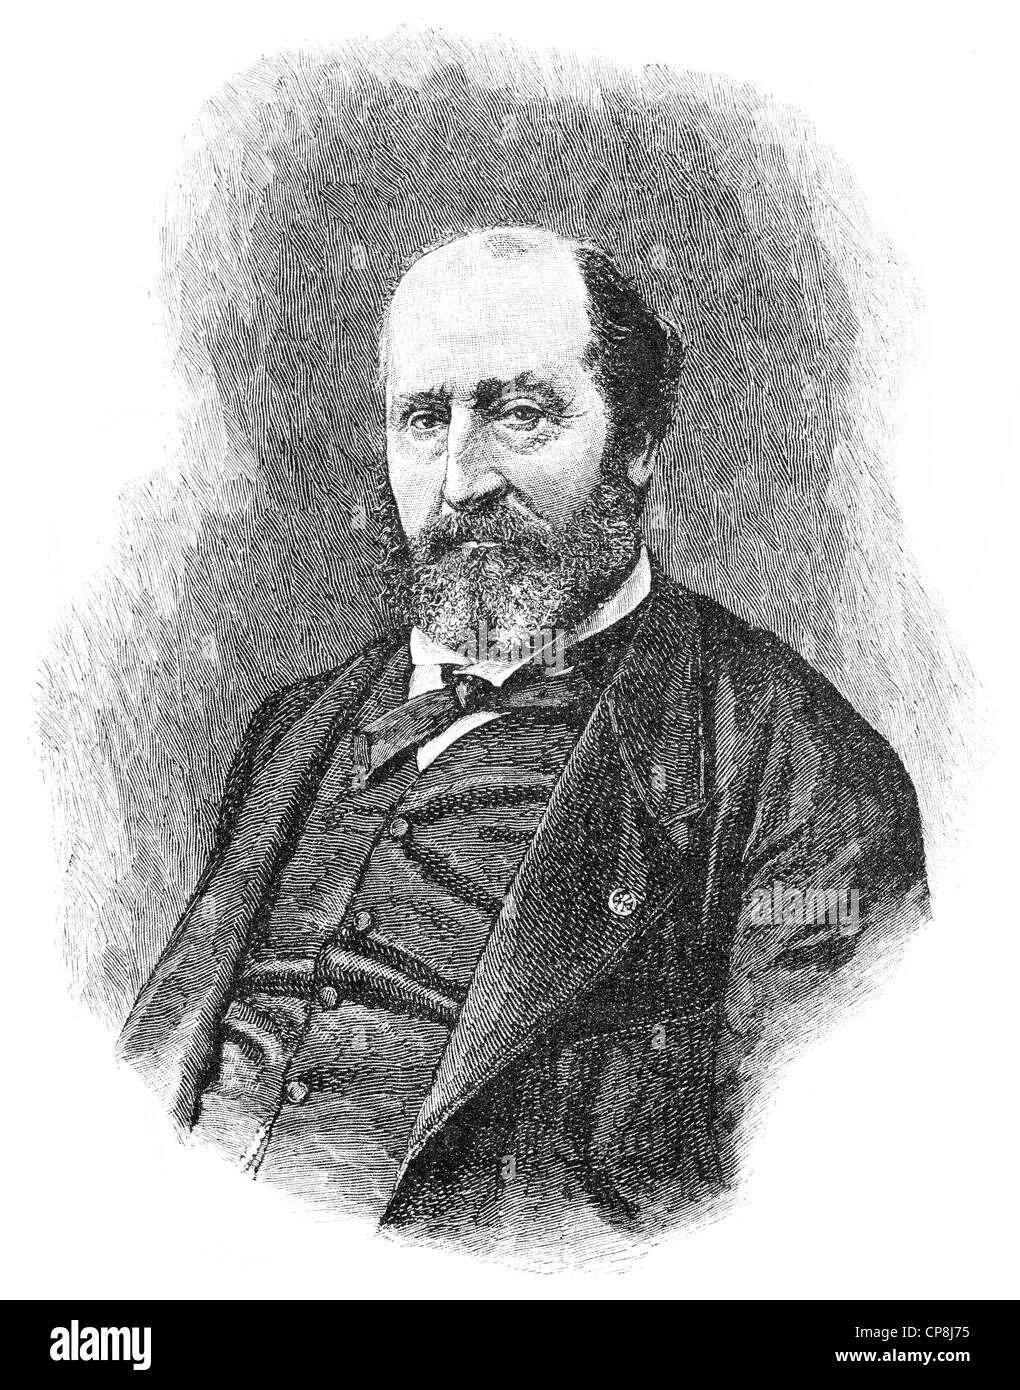 Guillaume Victor Émile Augier, 1820-1889, ein französischer Dramatiker, Lyriker und Librettist, Historische Druck aus Dem 19. Jahrhund Stockfoto